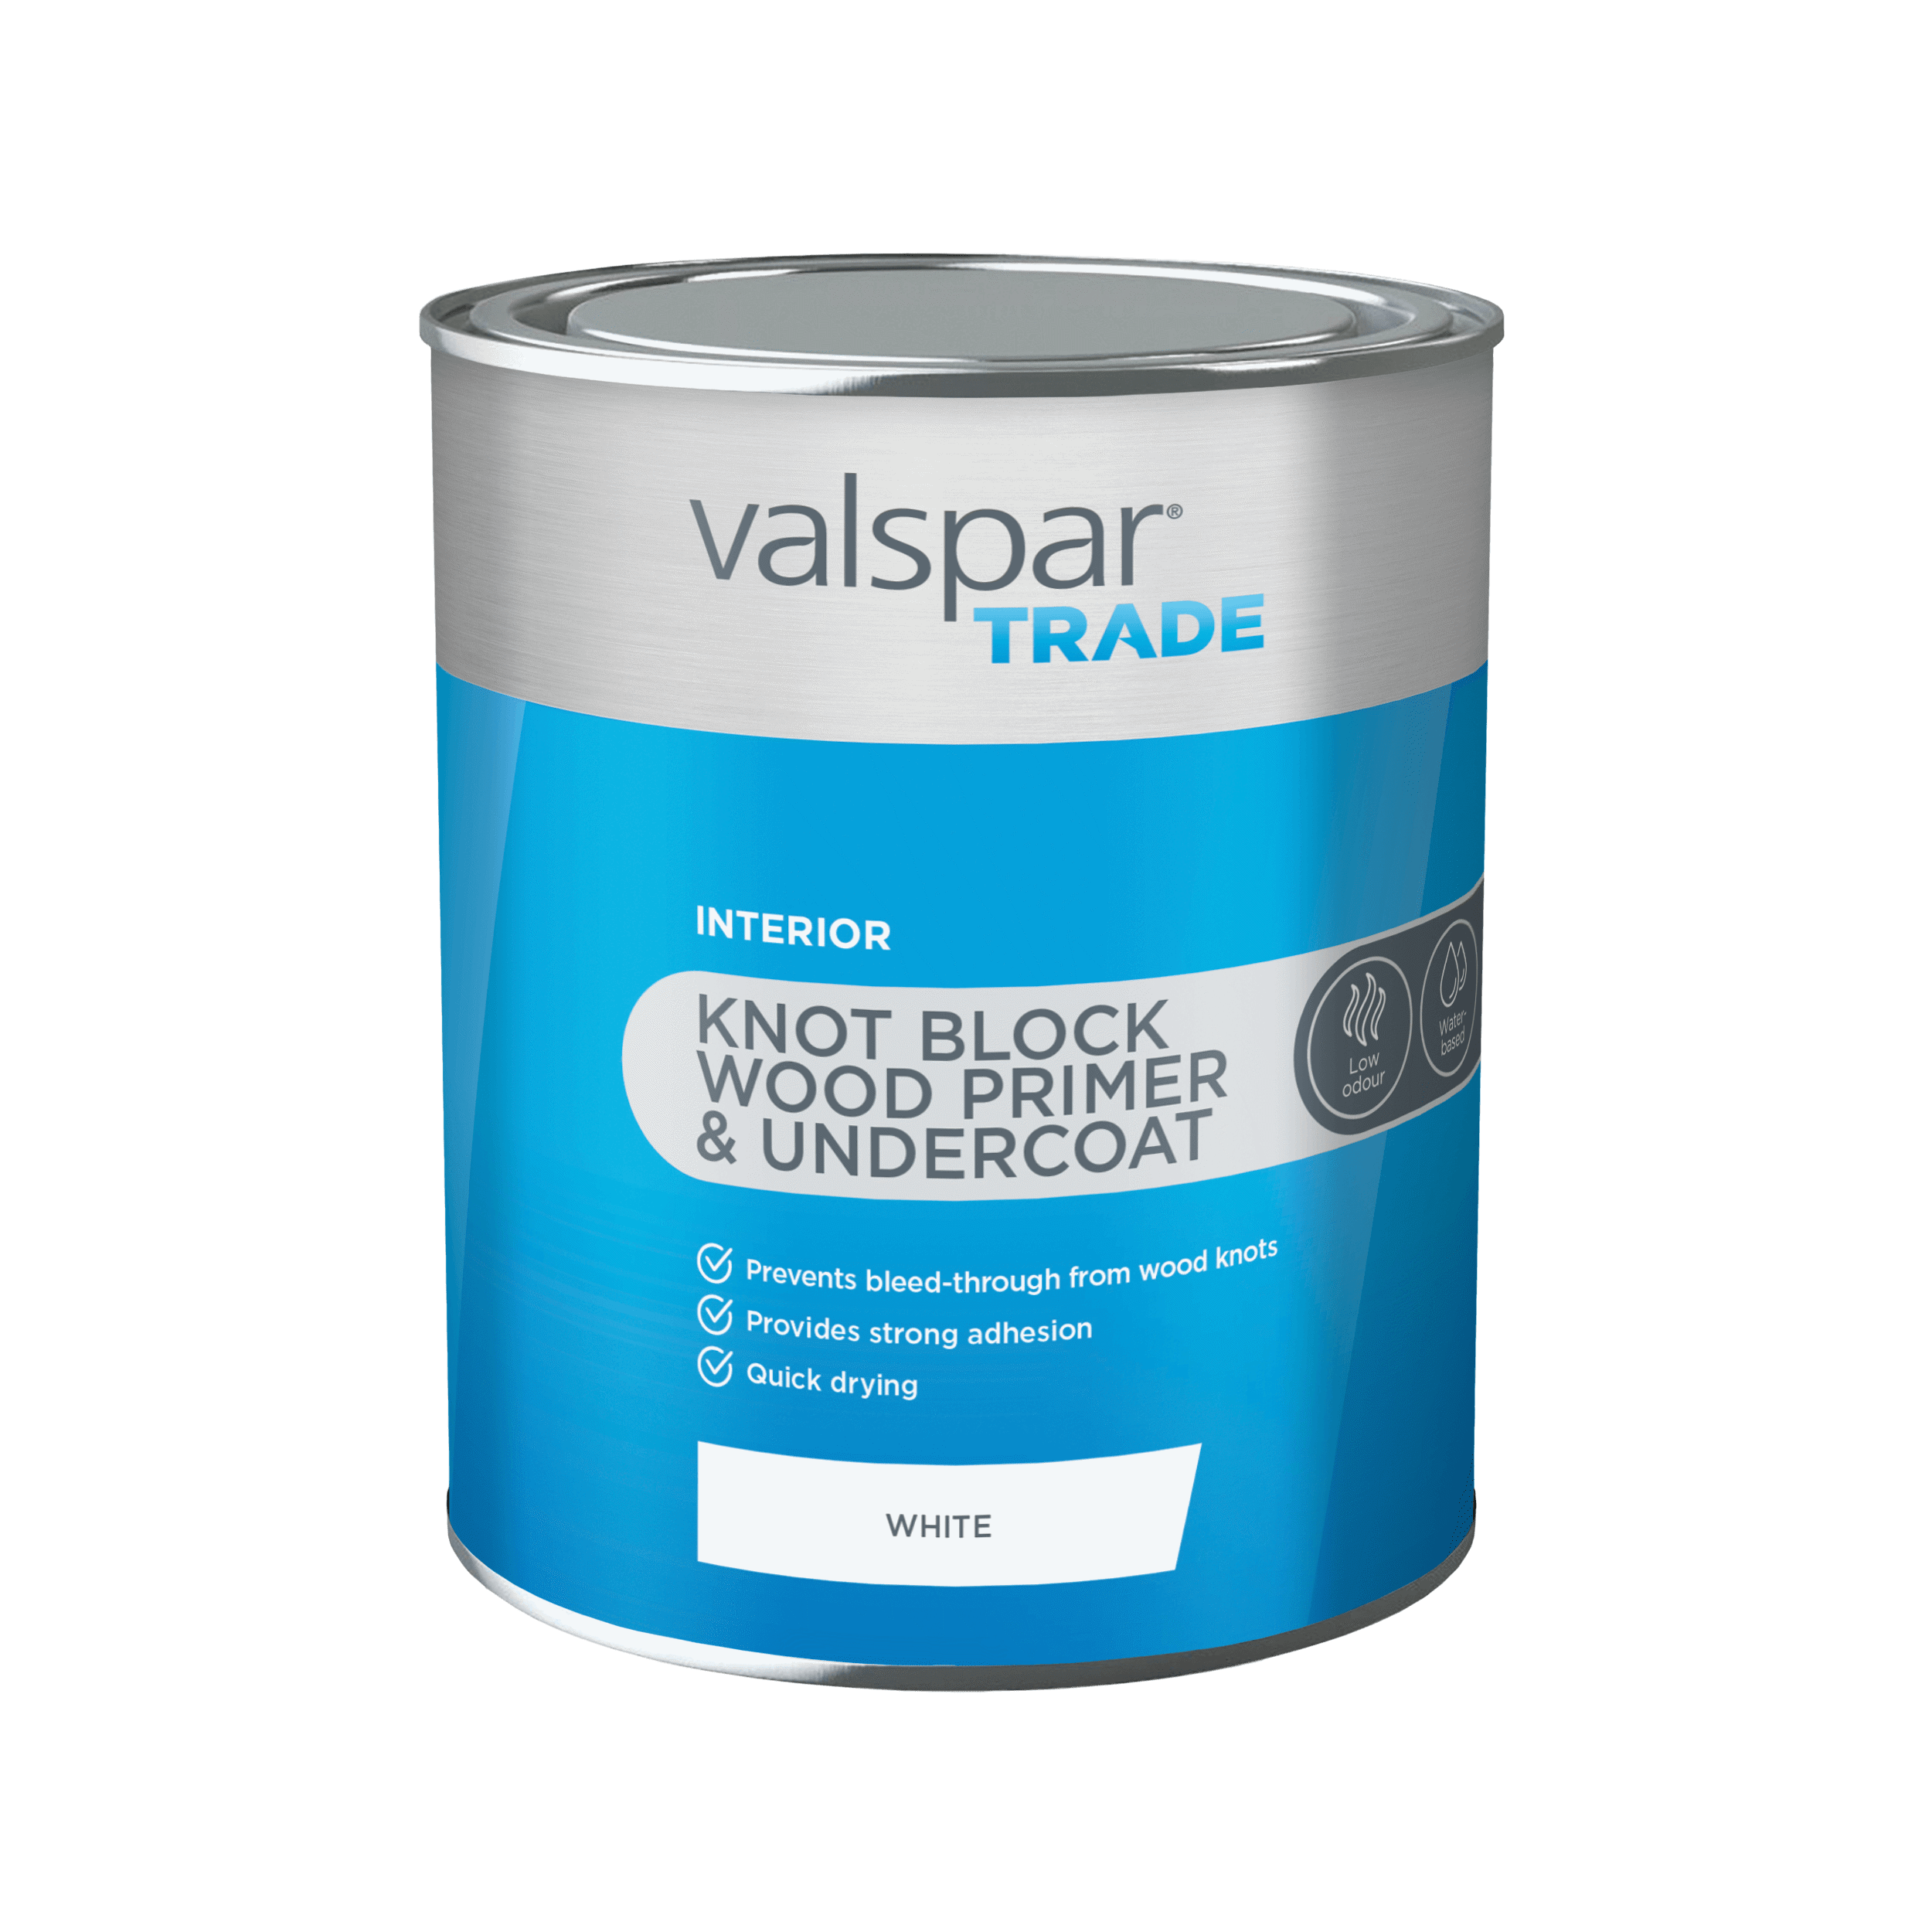 Valspar® Trade Knot Block Wood Primer & Undercoat